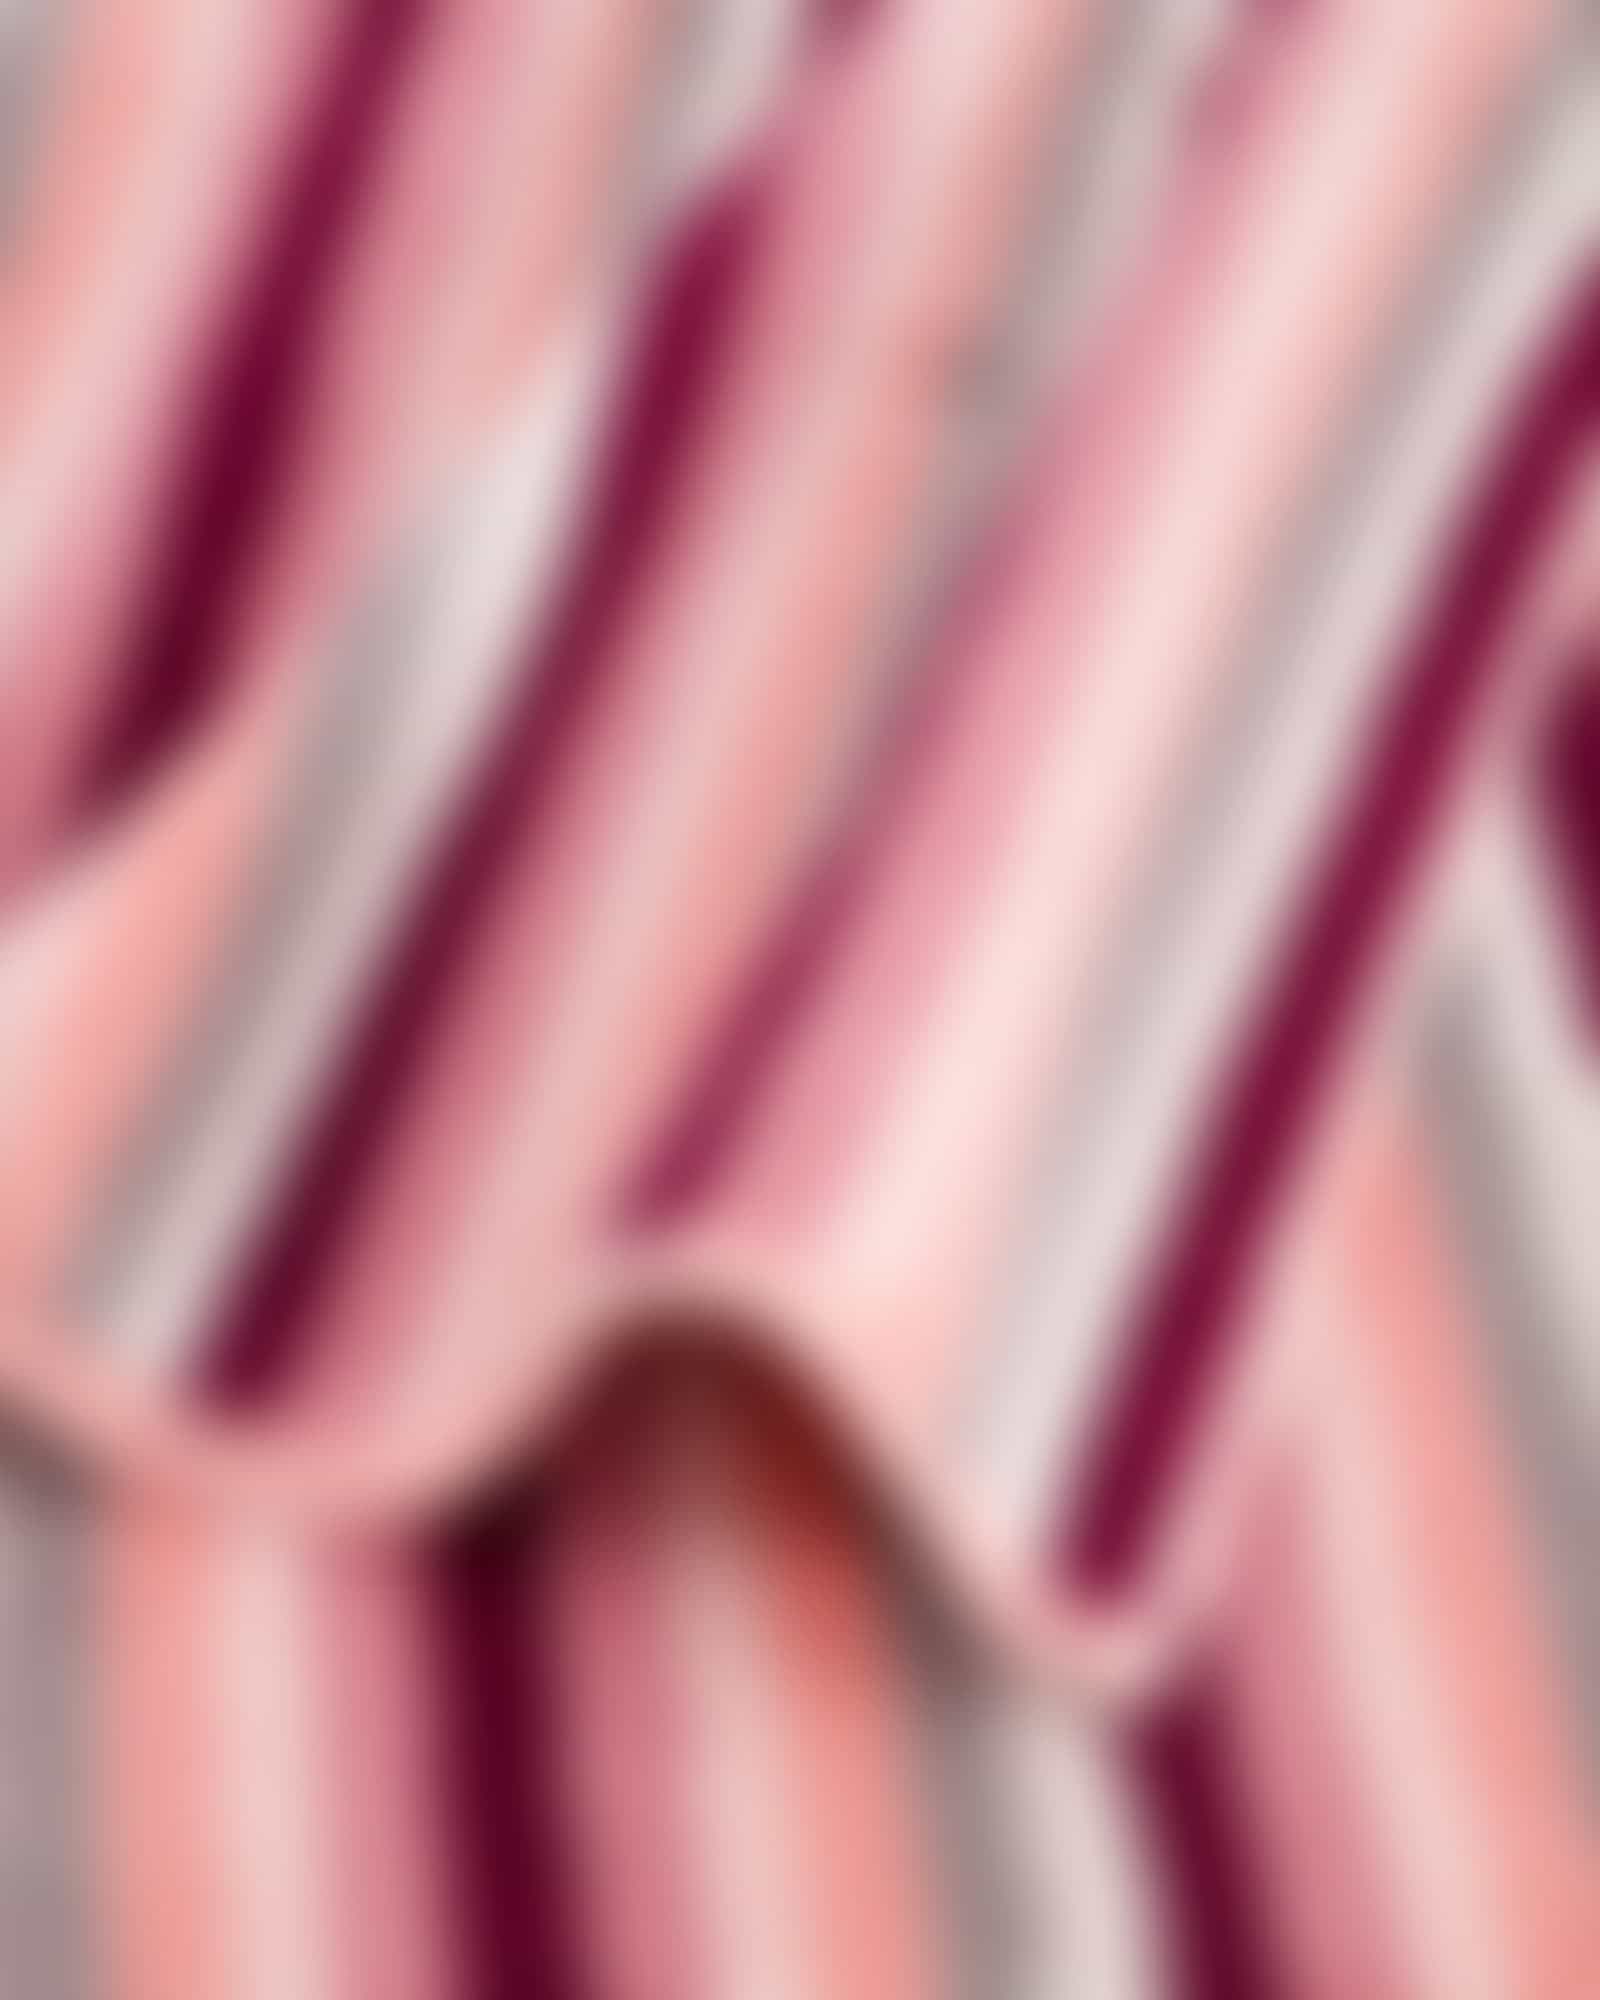 Cawö Handtücher Shades Streifen 6235 - Farbe: beere - 22 - Handtuch 50x100 cm